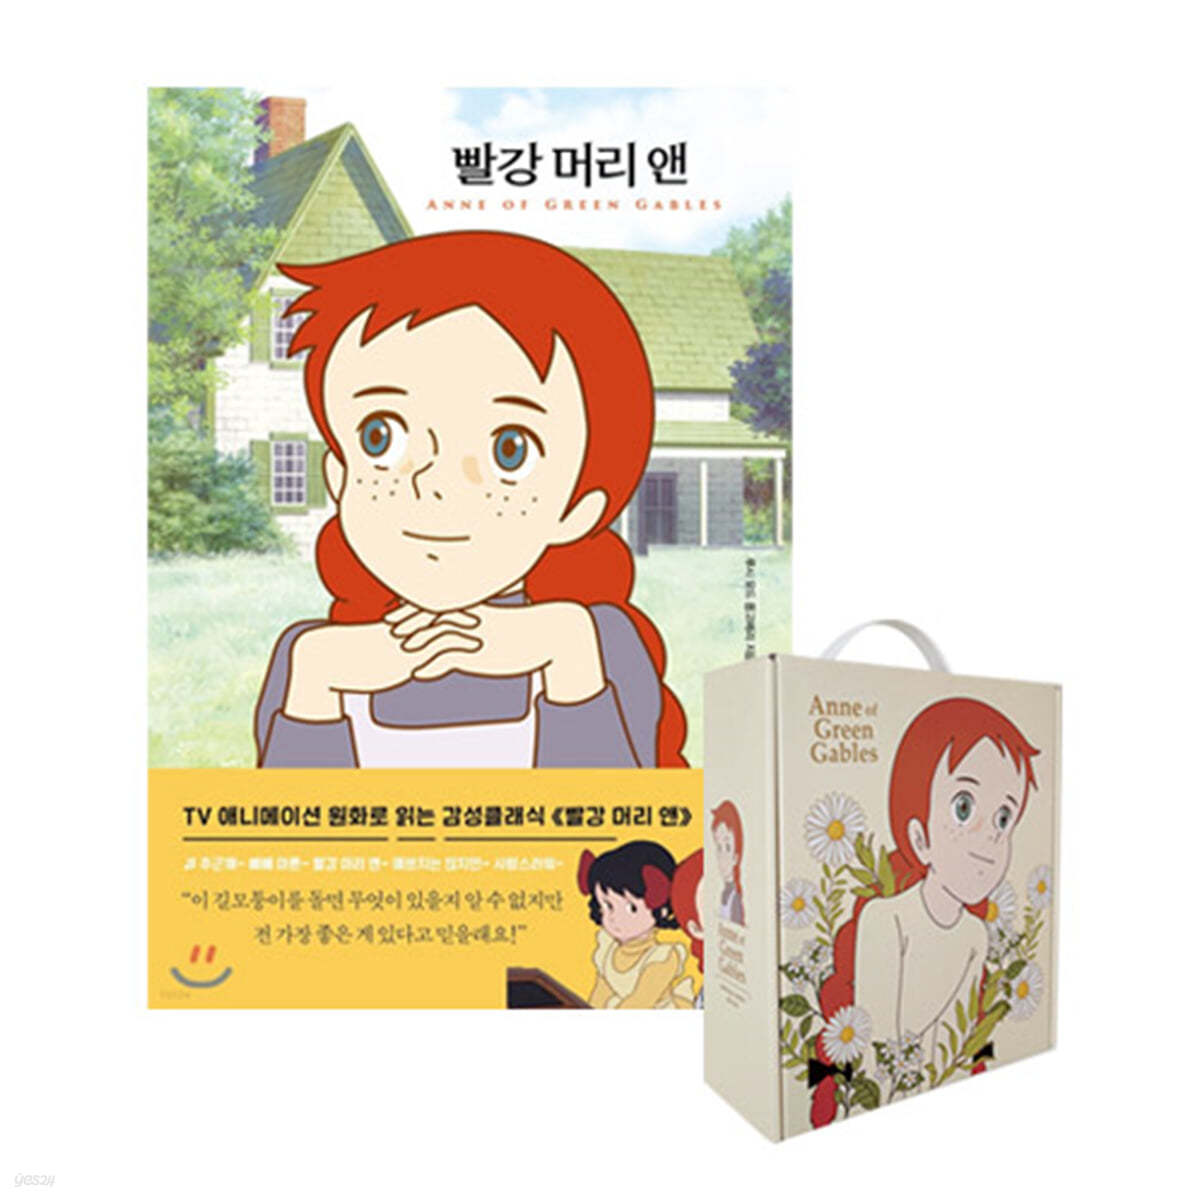 [종료] [YES24] 빨강 머리 앤 + 빨강 머리앤 드립백 커피 선물 세트